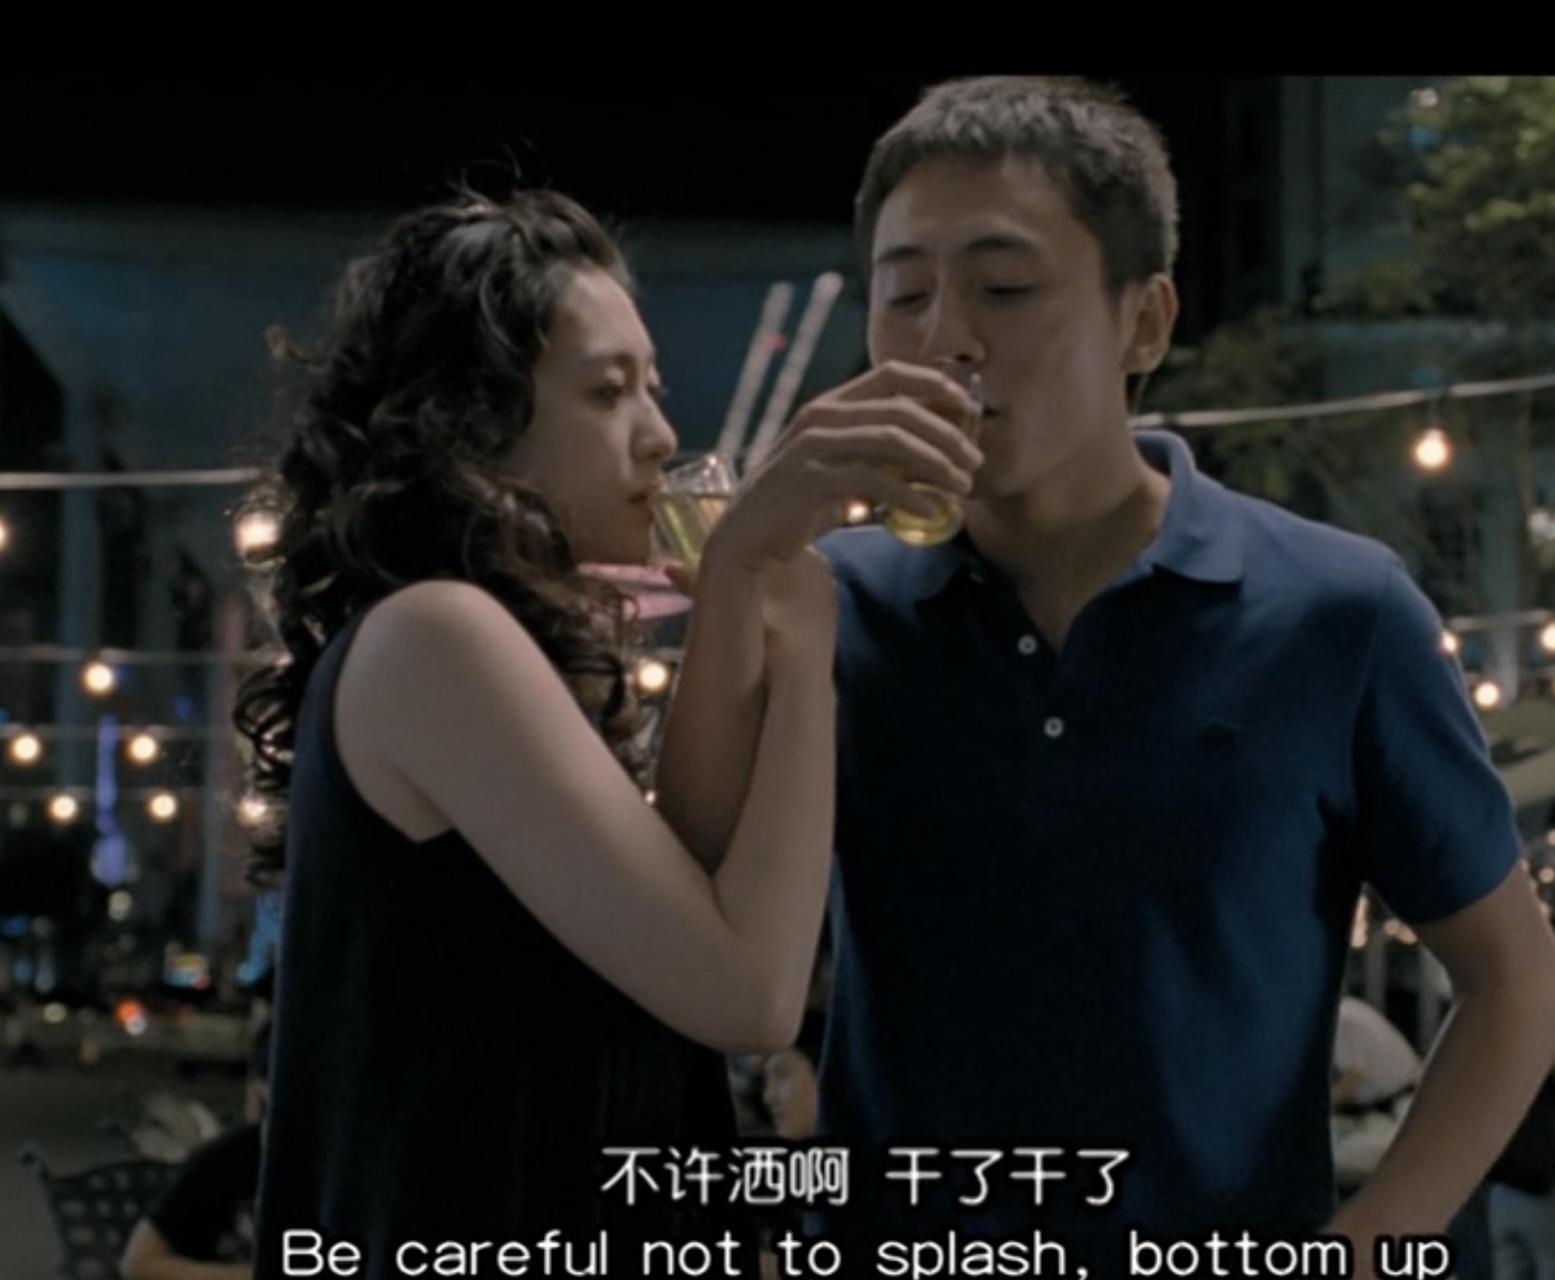 网友说《无人驾驶》刘烨犯规了,在厨房拍摄跟李小冉亲热镜头的时候